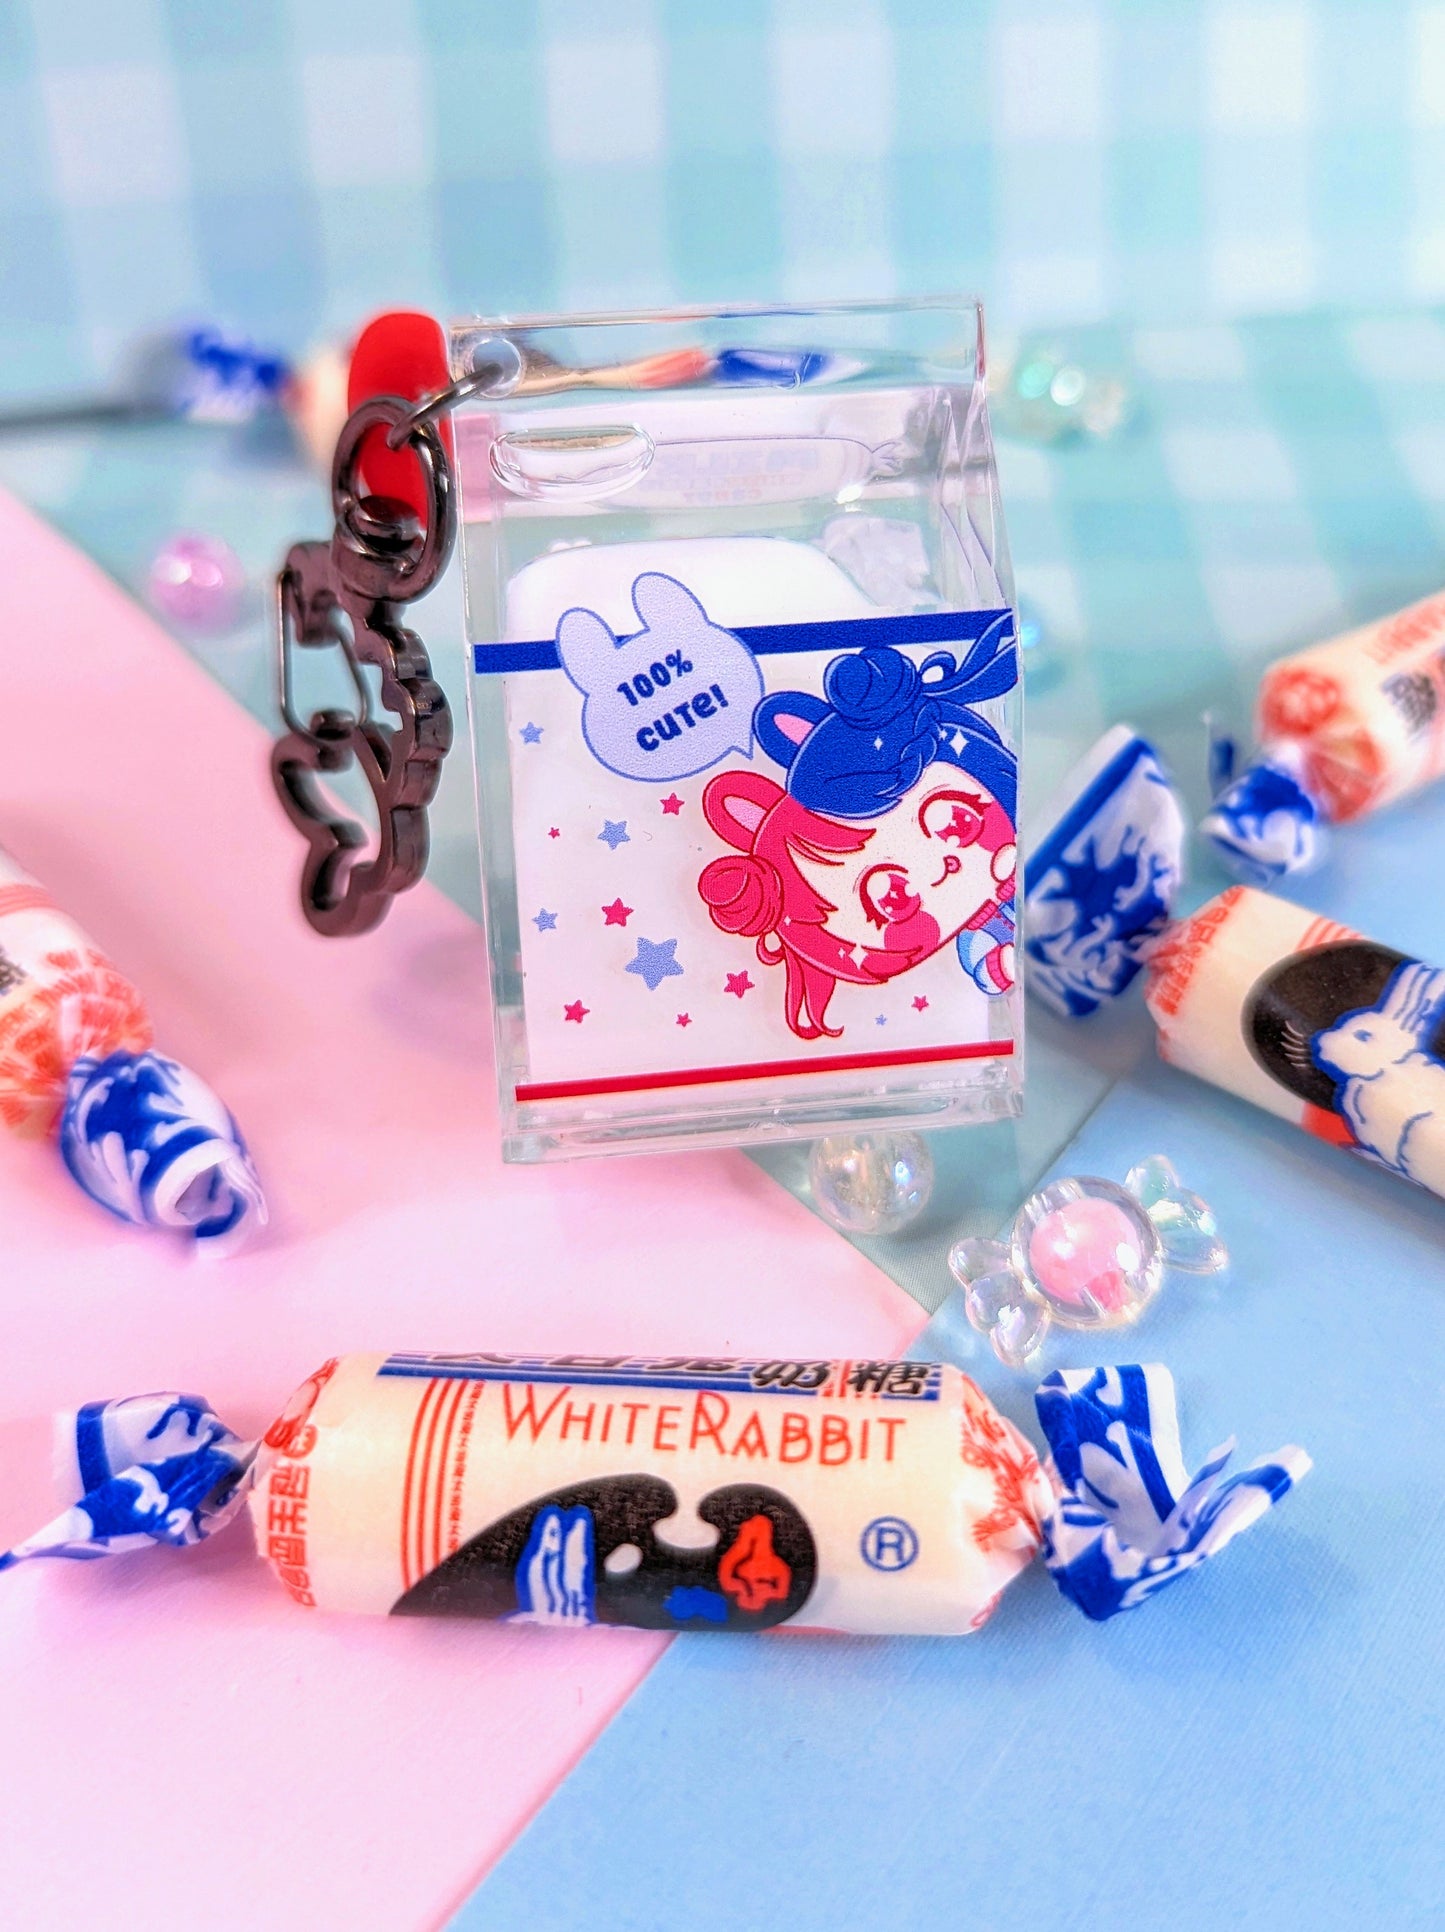 White Rabbit Candy, Milk Carton Liquid Keychain